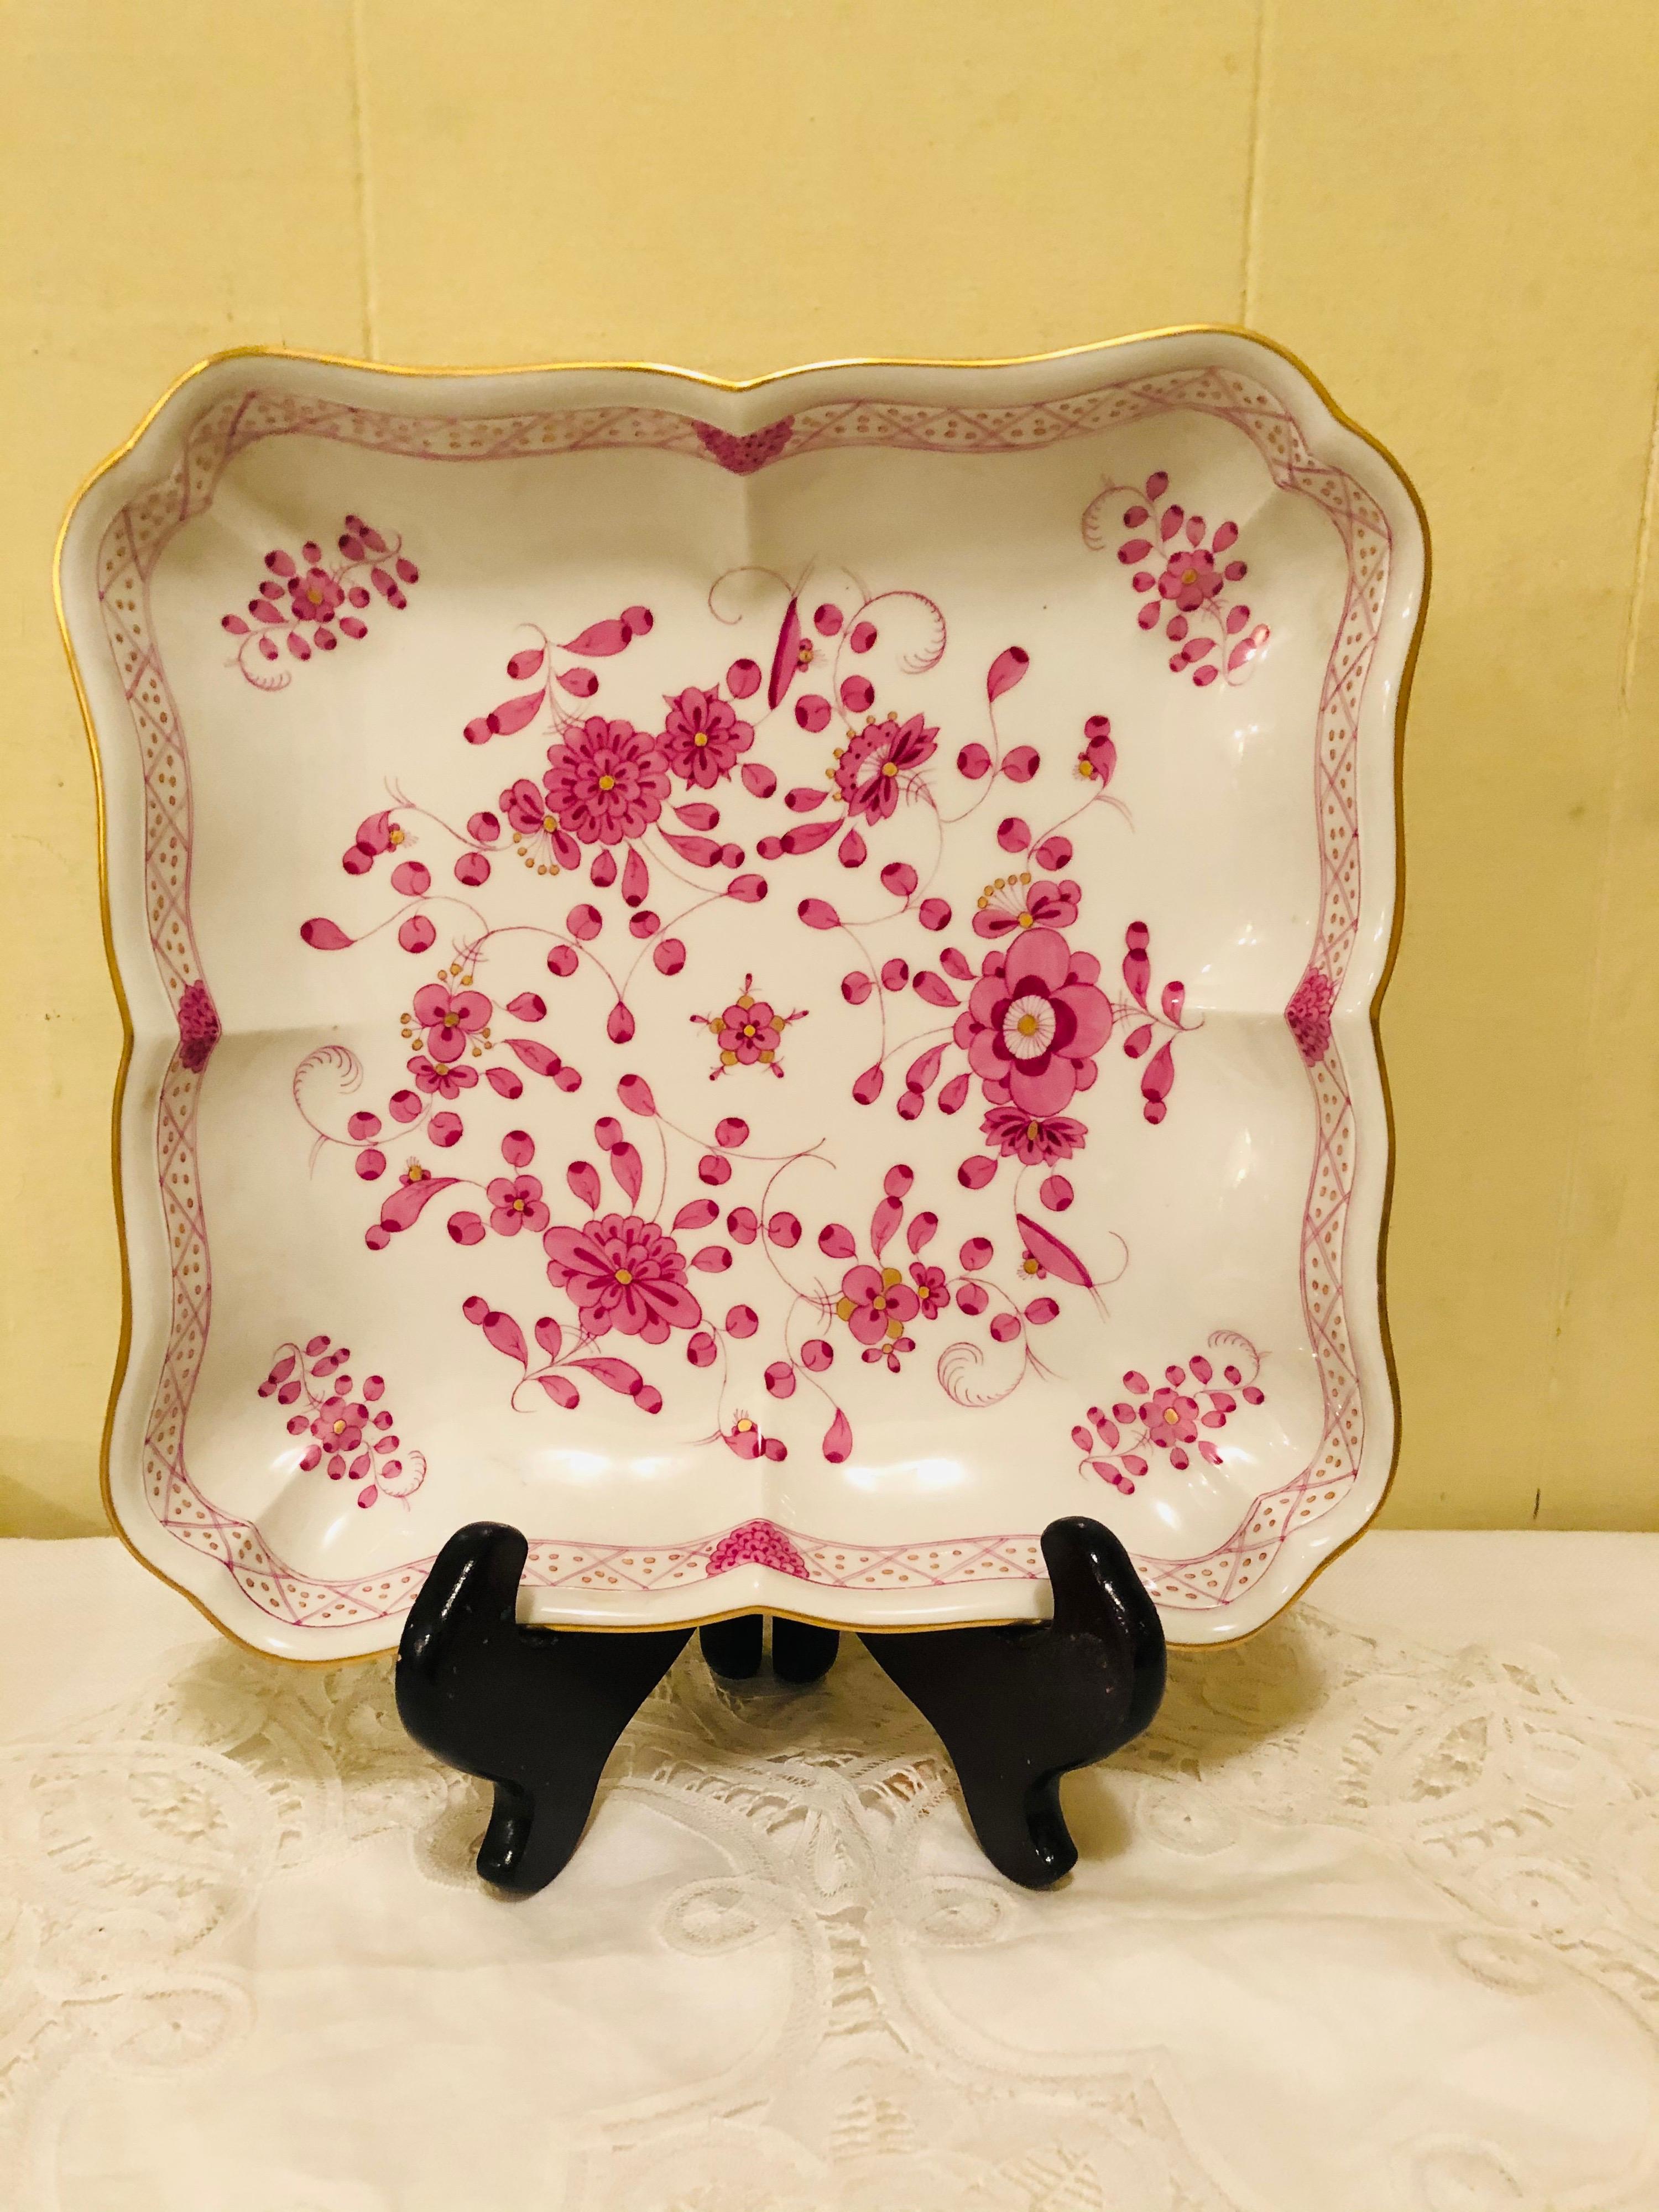 Ich möchte Ihnen diese schöne Meissener Purpur-Indianerschale in dieser ungewöhnlichen quadratischen Form anbieten.  Es hat detaillierte Malereien von rosa Blumen mit einigen lila und goldenen Akzenten auf weißem Grund. Die detailgetreue Bemalung